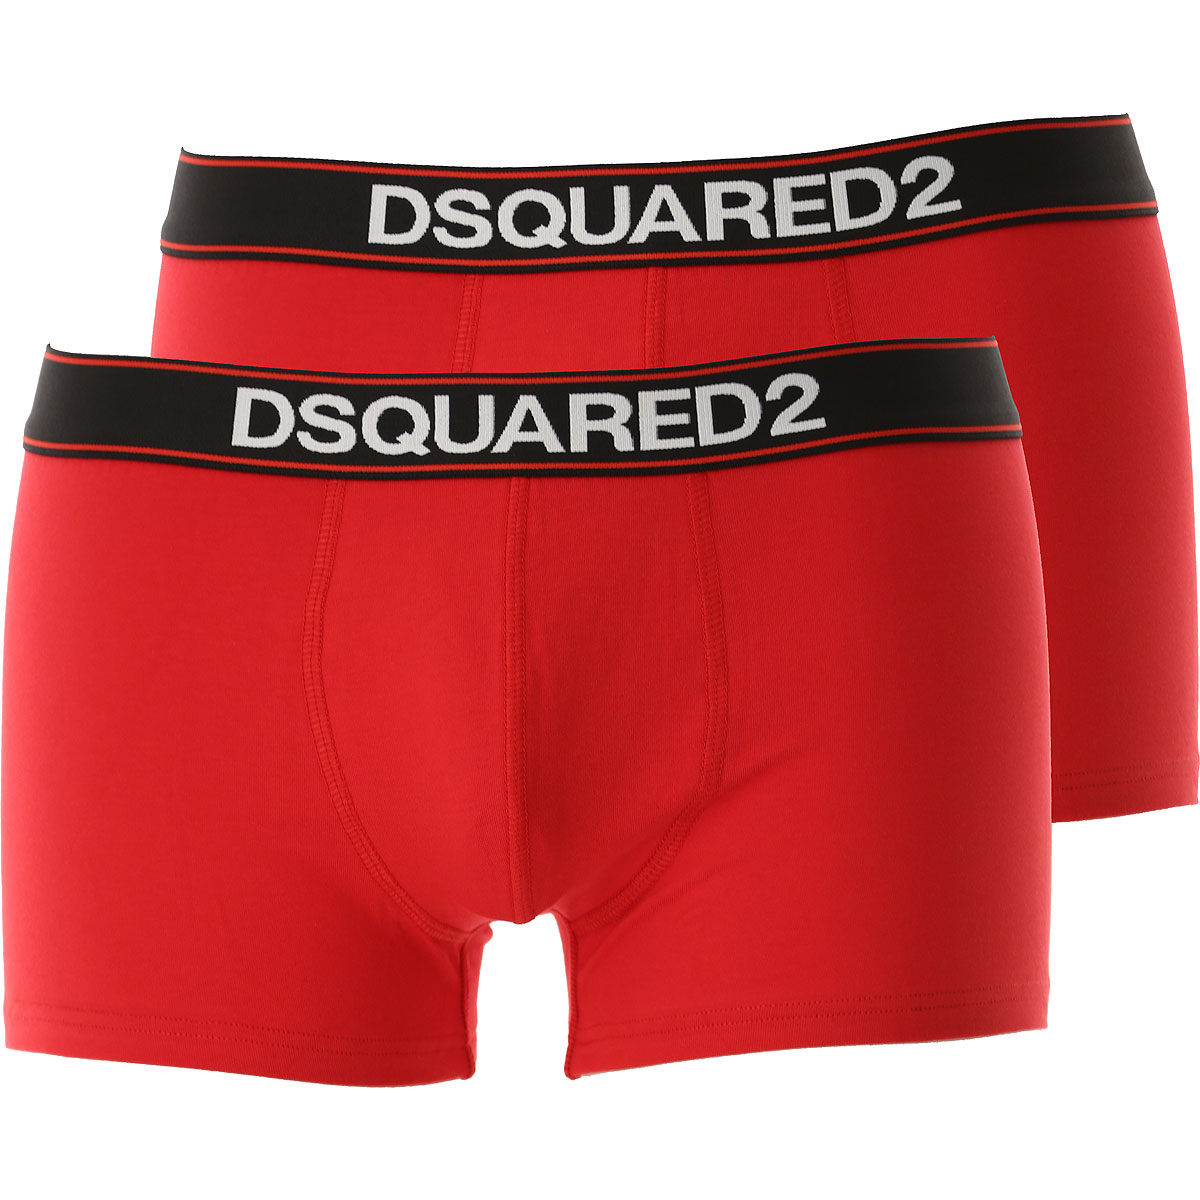 Dsquared Boxer Shorts für Herren, Unterhose, Short, Boxer Günstig im Sale, 2 Pack, Rot, Baumwolle, 2017, L M S XL XXL